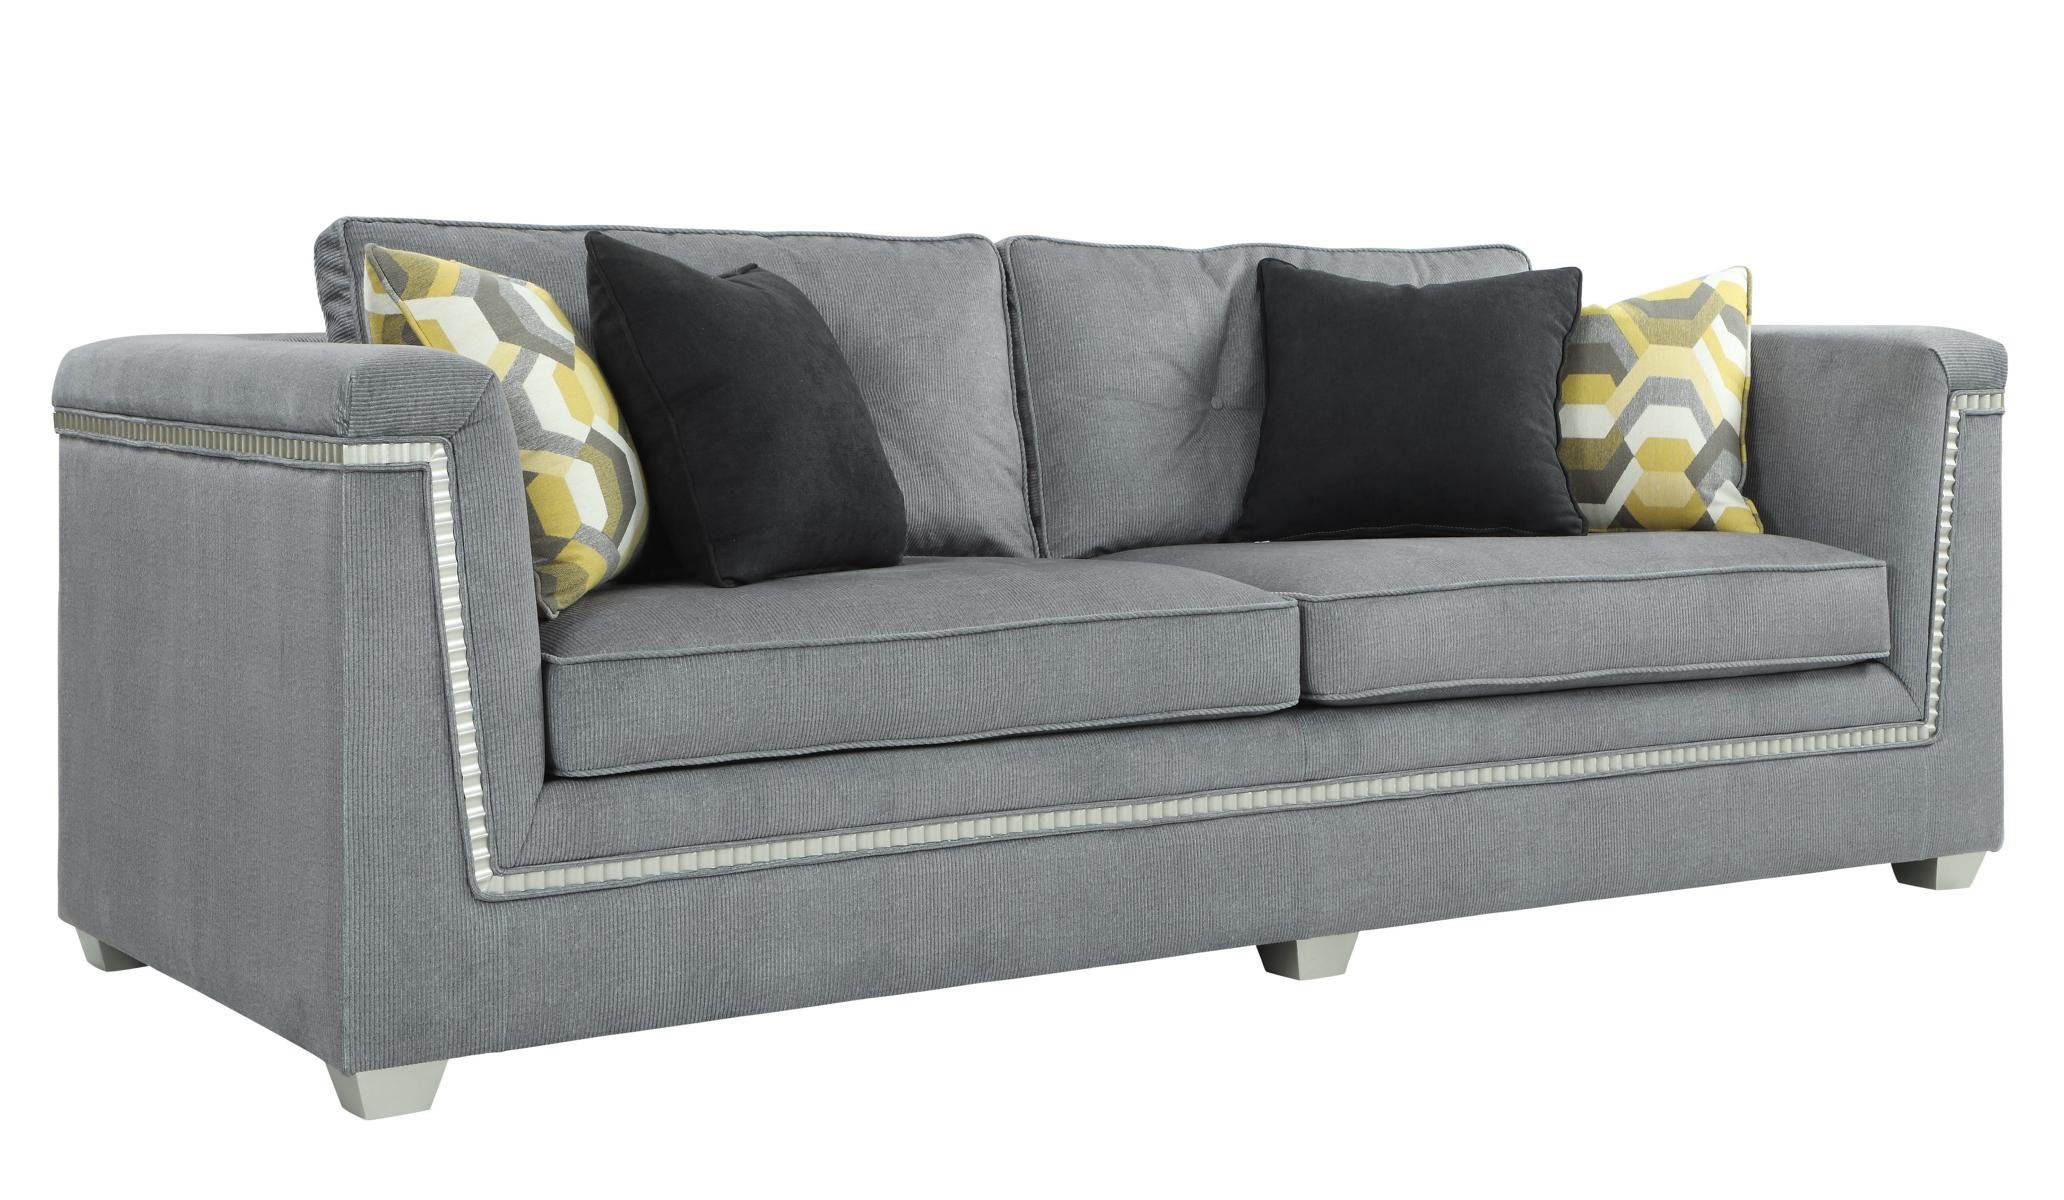 JVmoebel Sofa in 3+1 Polstermöbel Textil Sofagarnitur Wohnzimmer Graue Couchen, Made Europe